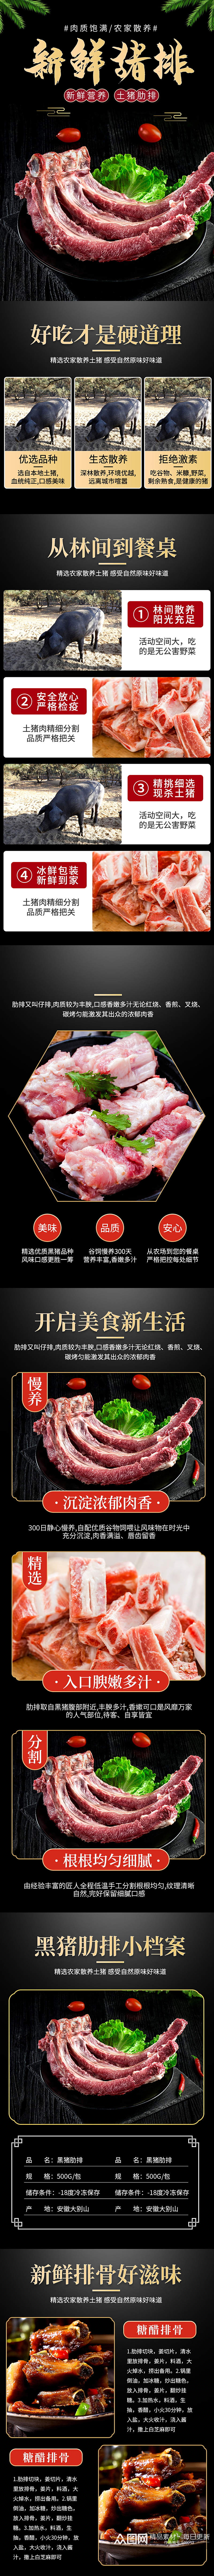 淘宝生鲜中国风黑猪猪排排骨肋排详情页素材